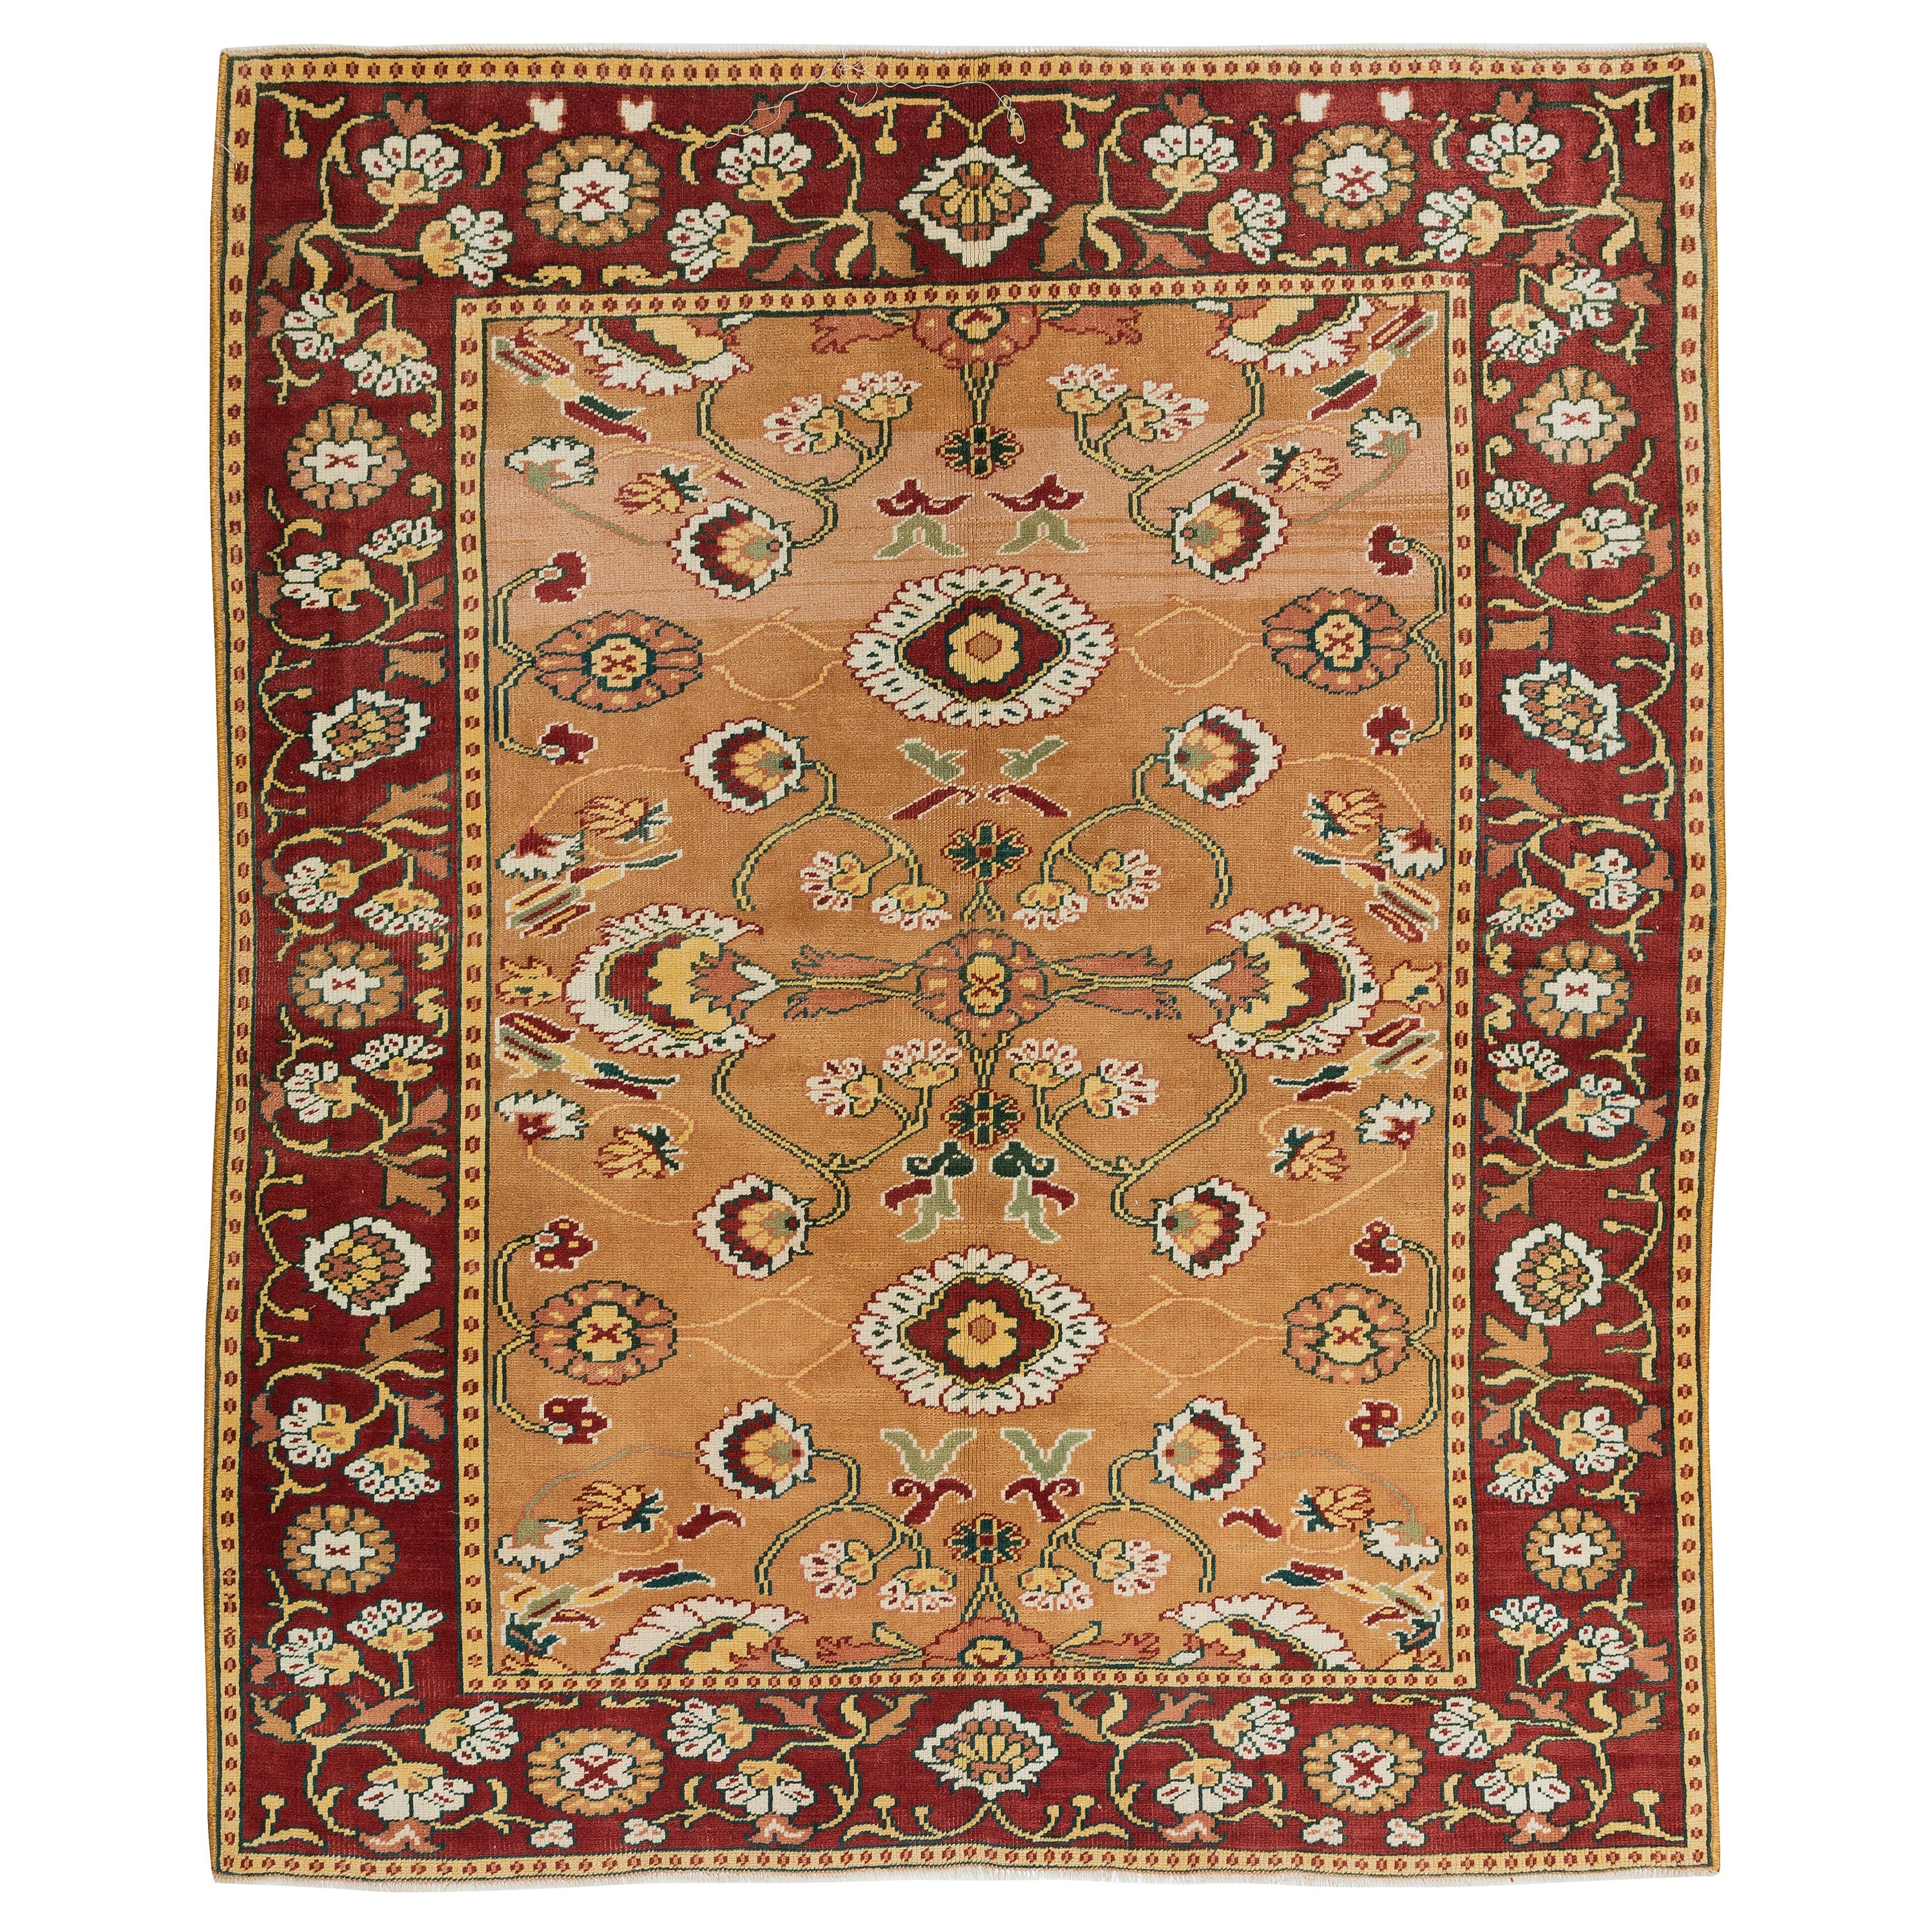 4.6x5.5 Ft Vintage Turkish Rug with Floral Design, One of a Kind Handmade Carpet For Sale